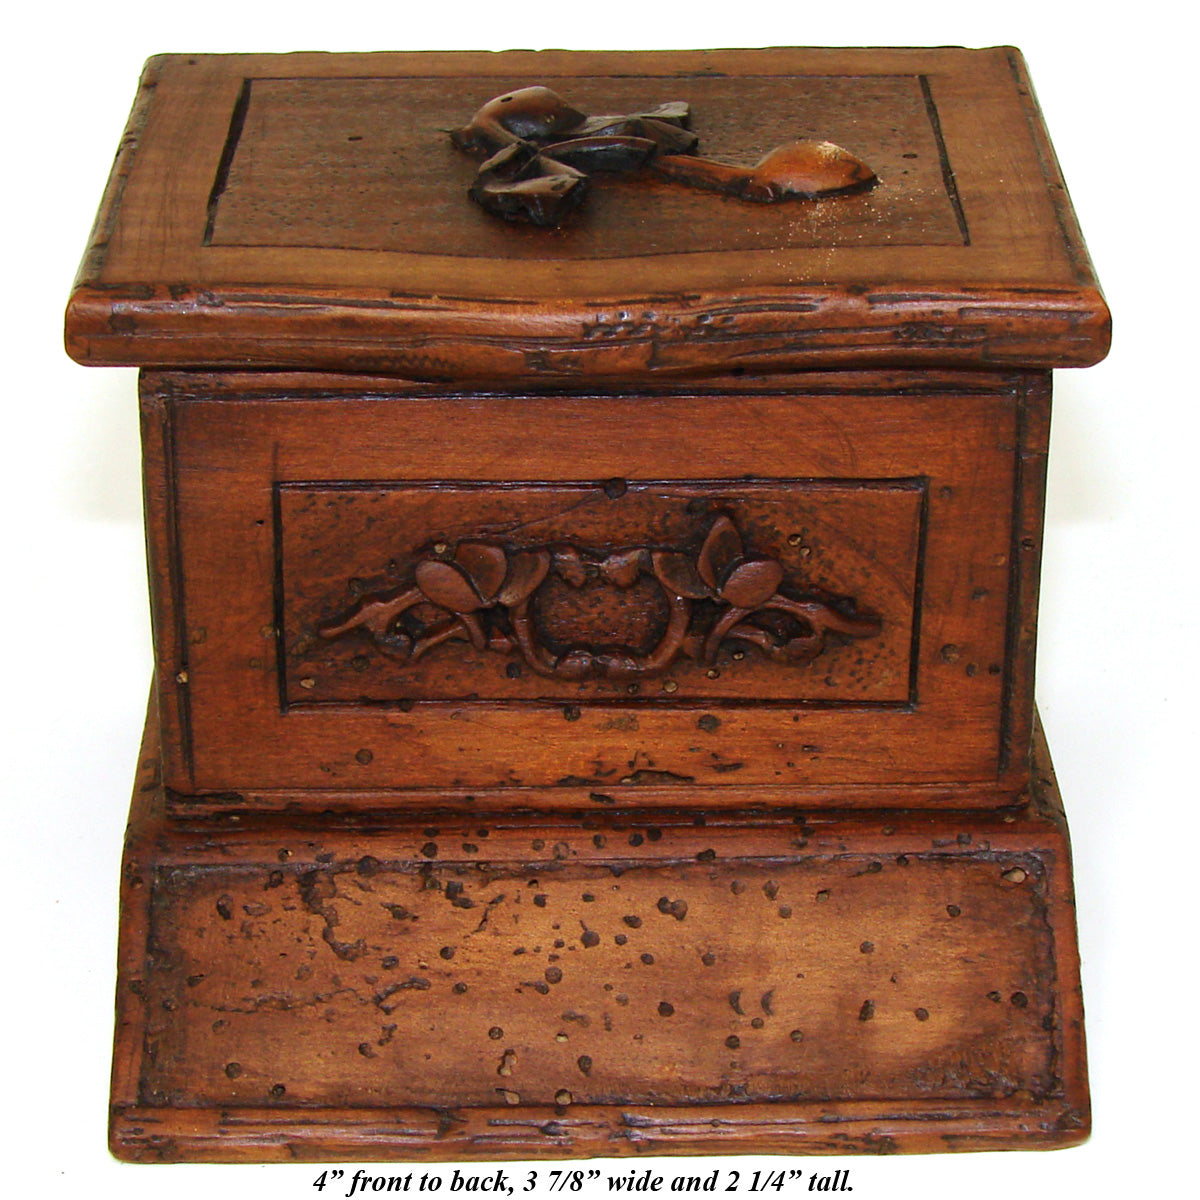 Antique Black Forest Carved Match Holder Box, Casket, Tobacco Pipe Carved Accents & Striker Panel